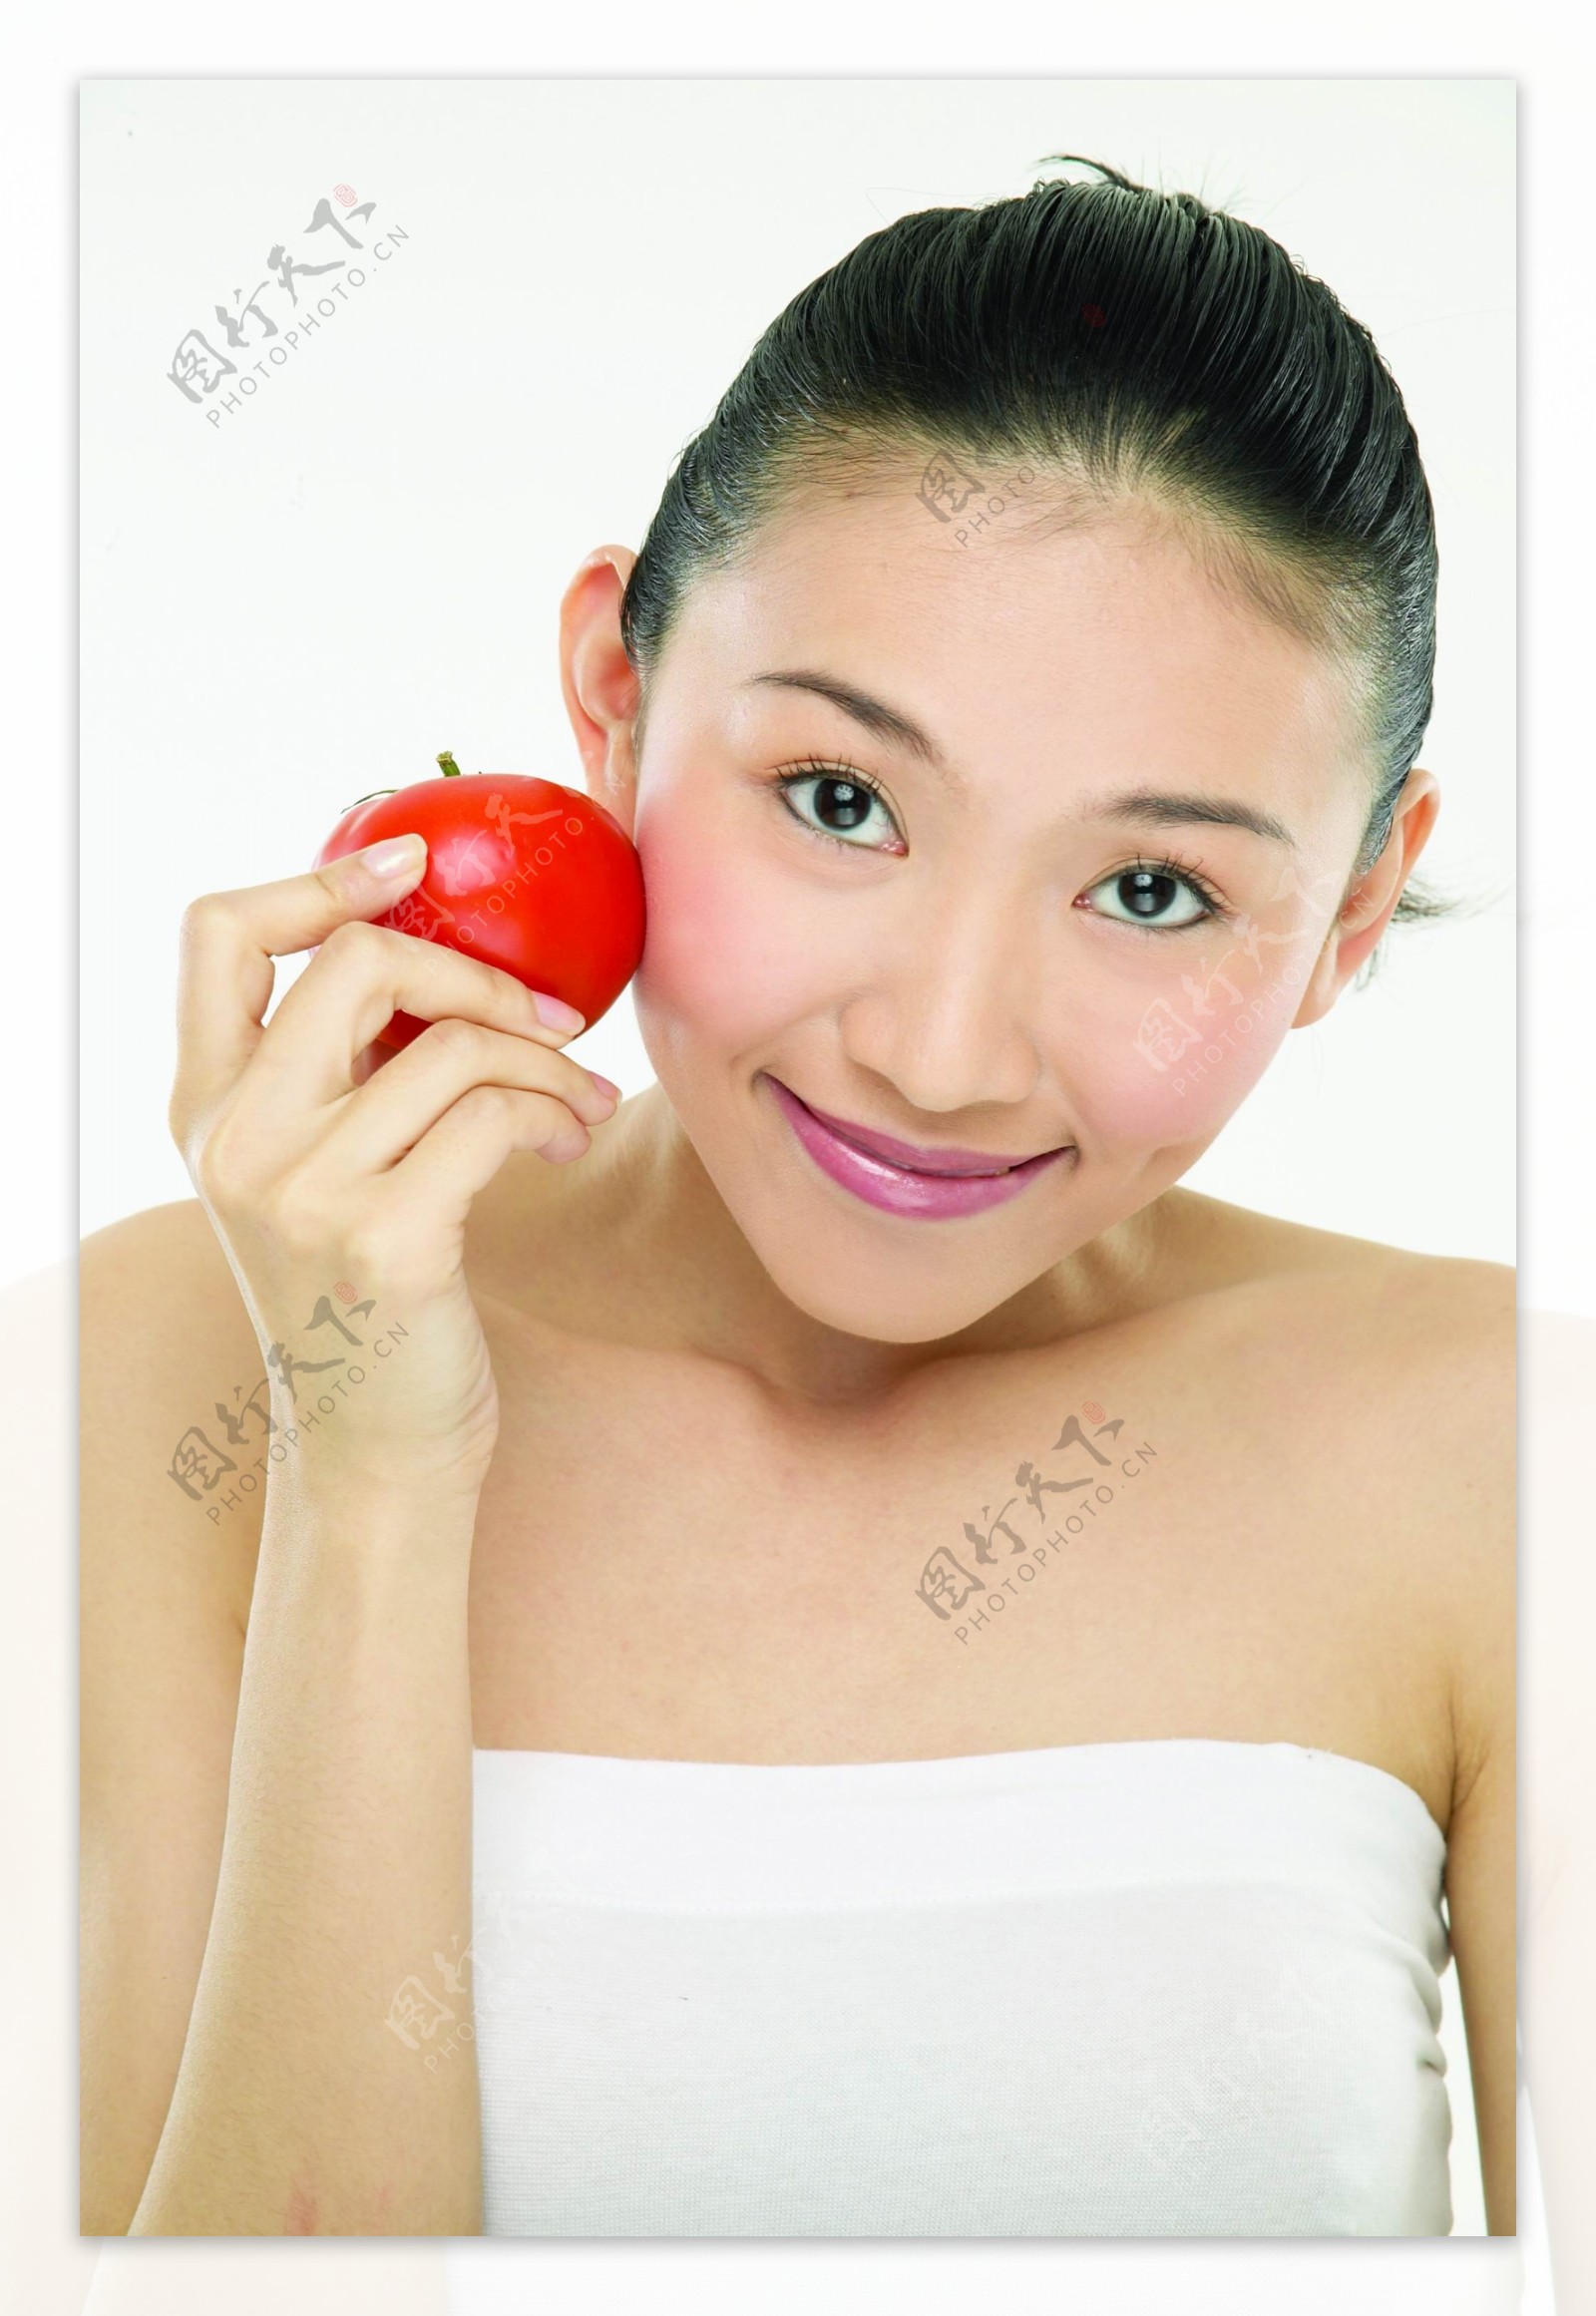 手拿蕃茄的健康美女图片